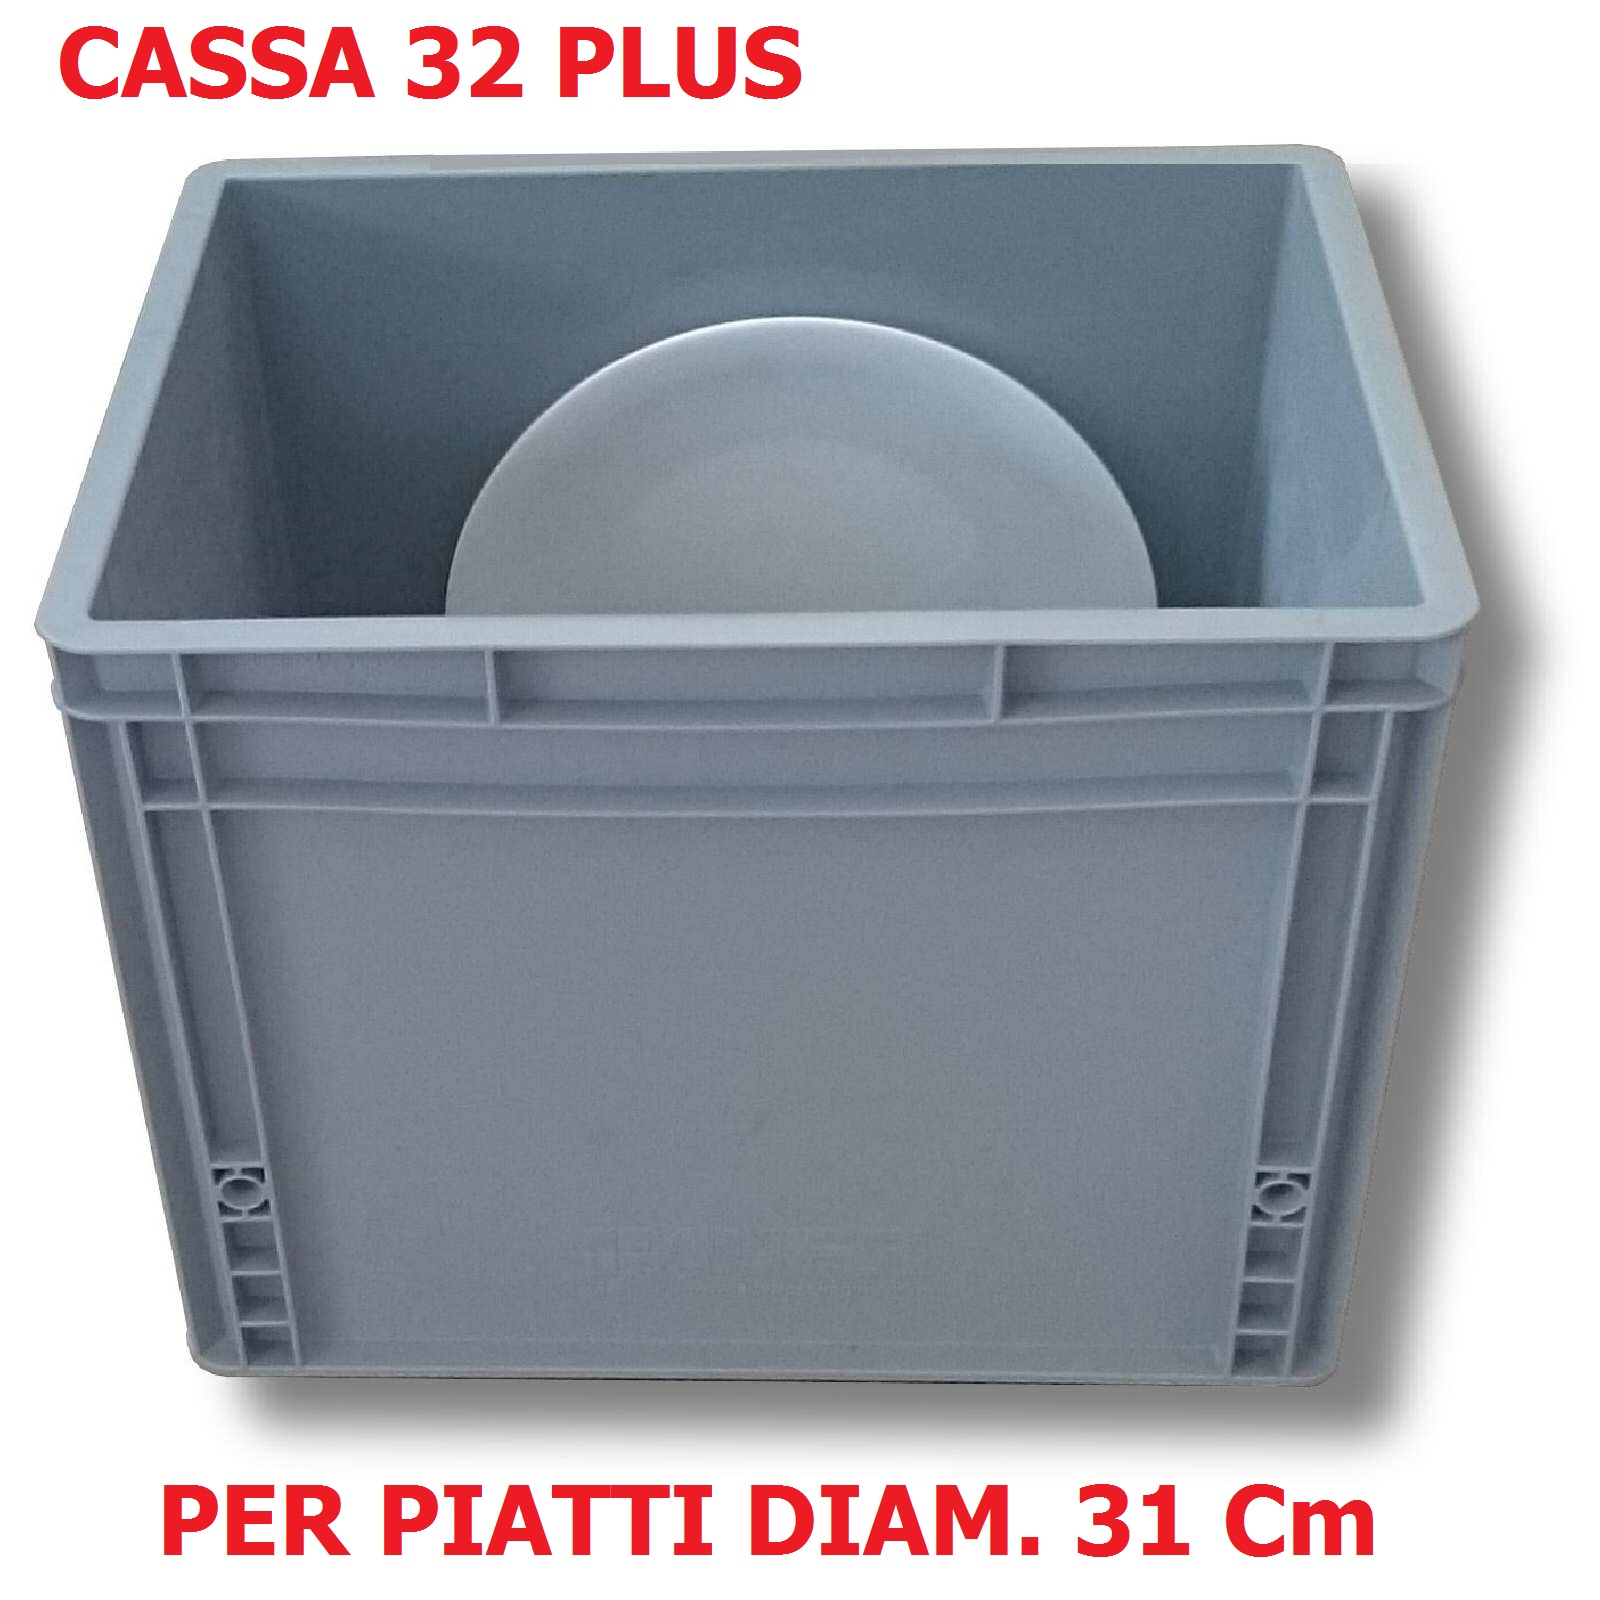 365 mm H x 400 mm L x 600 mm D NUOVO contenitore in plastica Croc impilabile / scatola Nest Soluzioni di scaffalatura industriale capacità da 65 litri scatole con coperchio - confezione da 2 